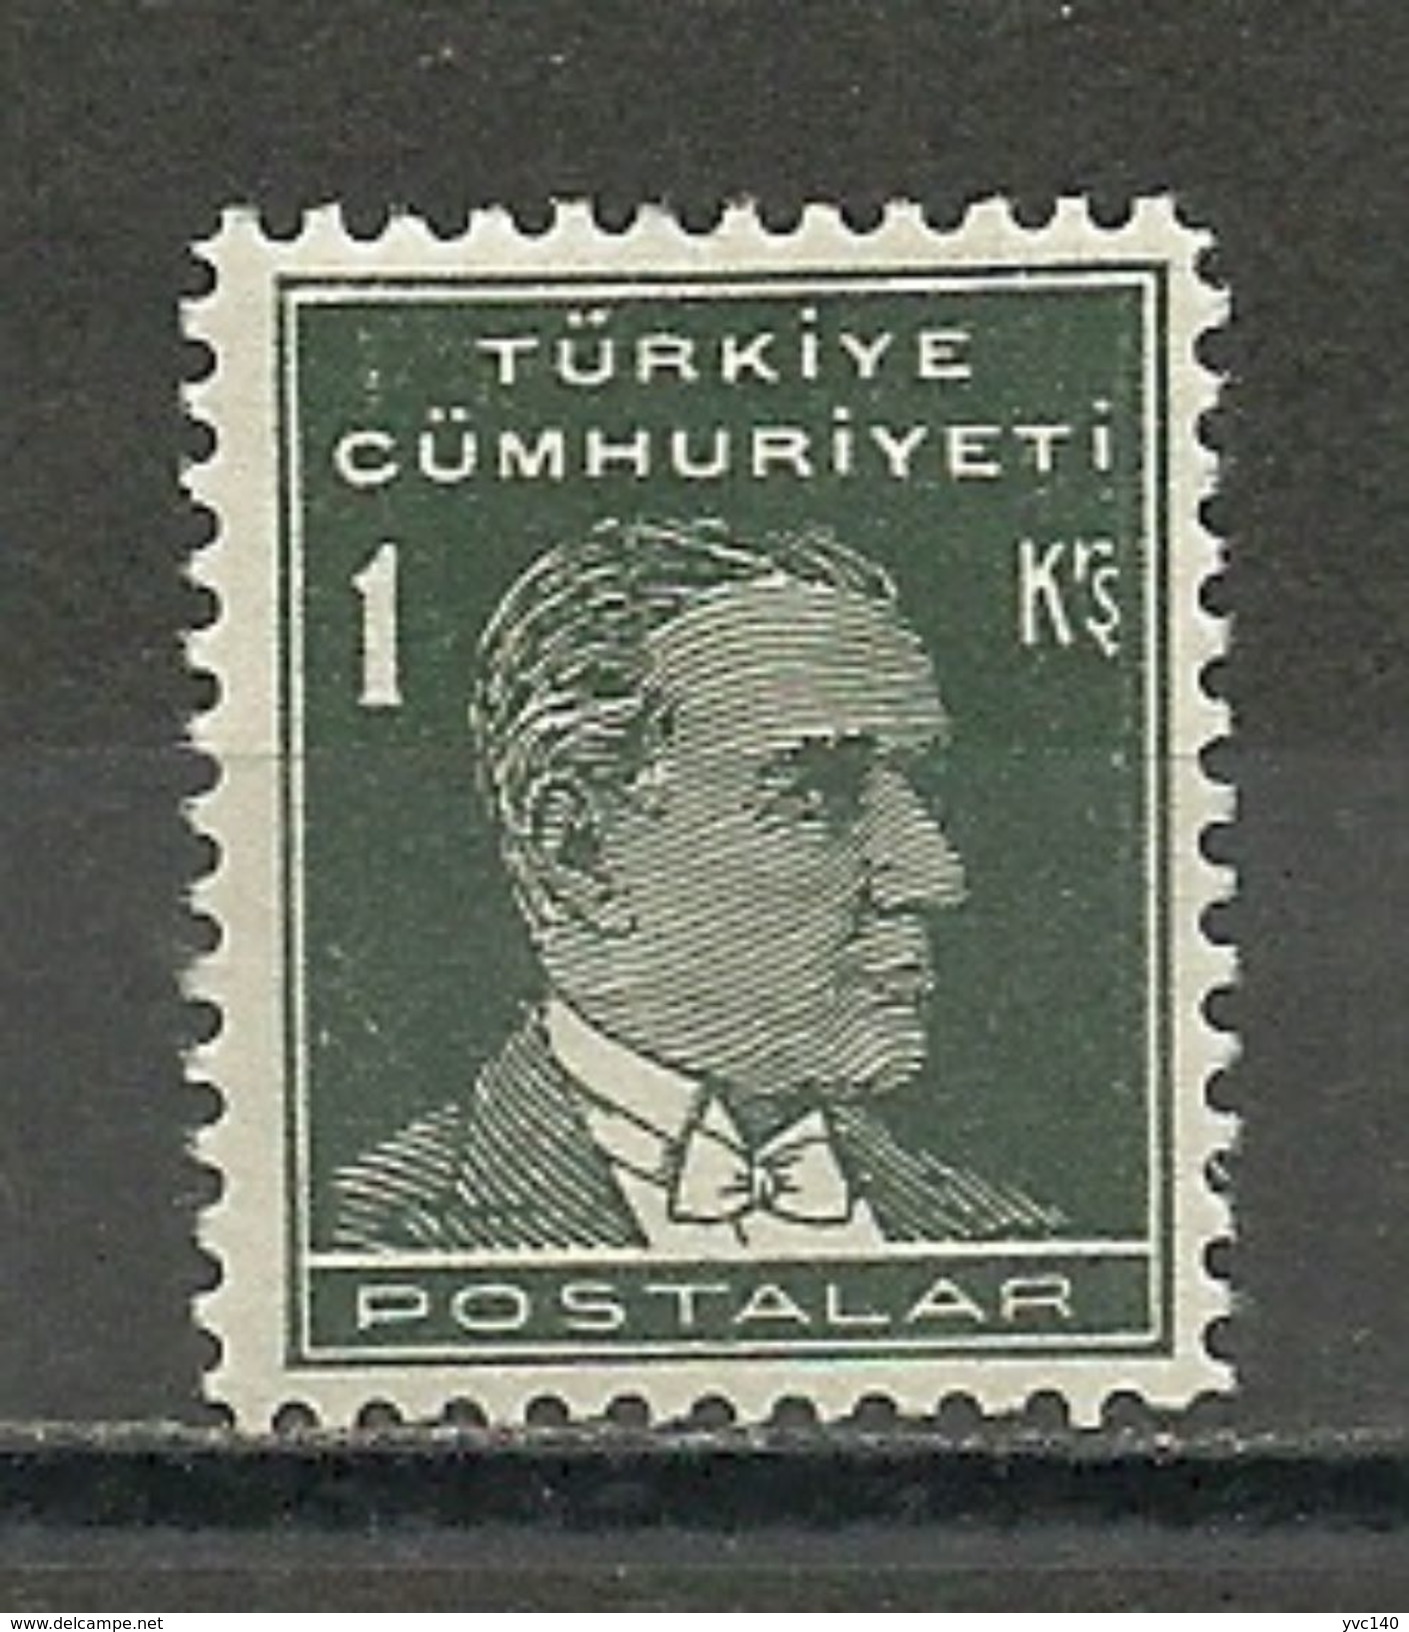 Turkey; 1931 1st Ataturk Issue Stamp 1 K. ERROR ("Postalar" Instead Of "Postalari") - Nuevos